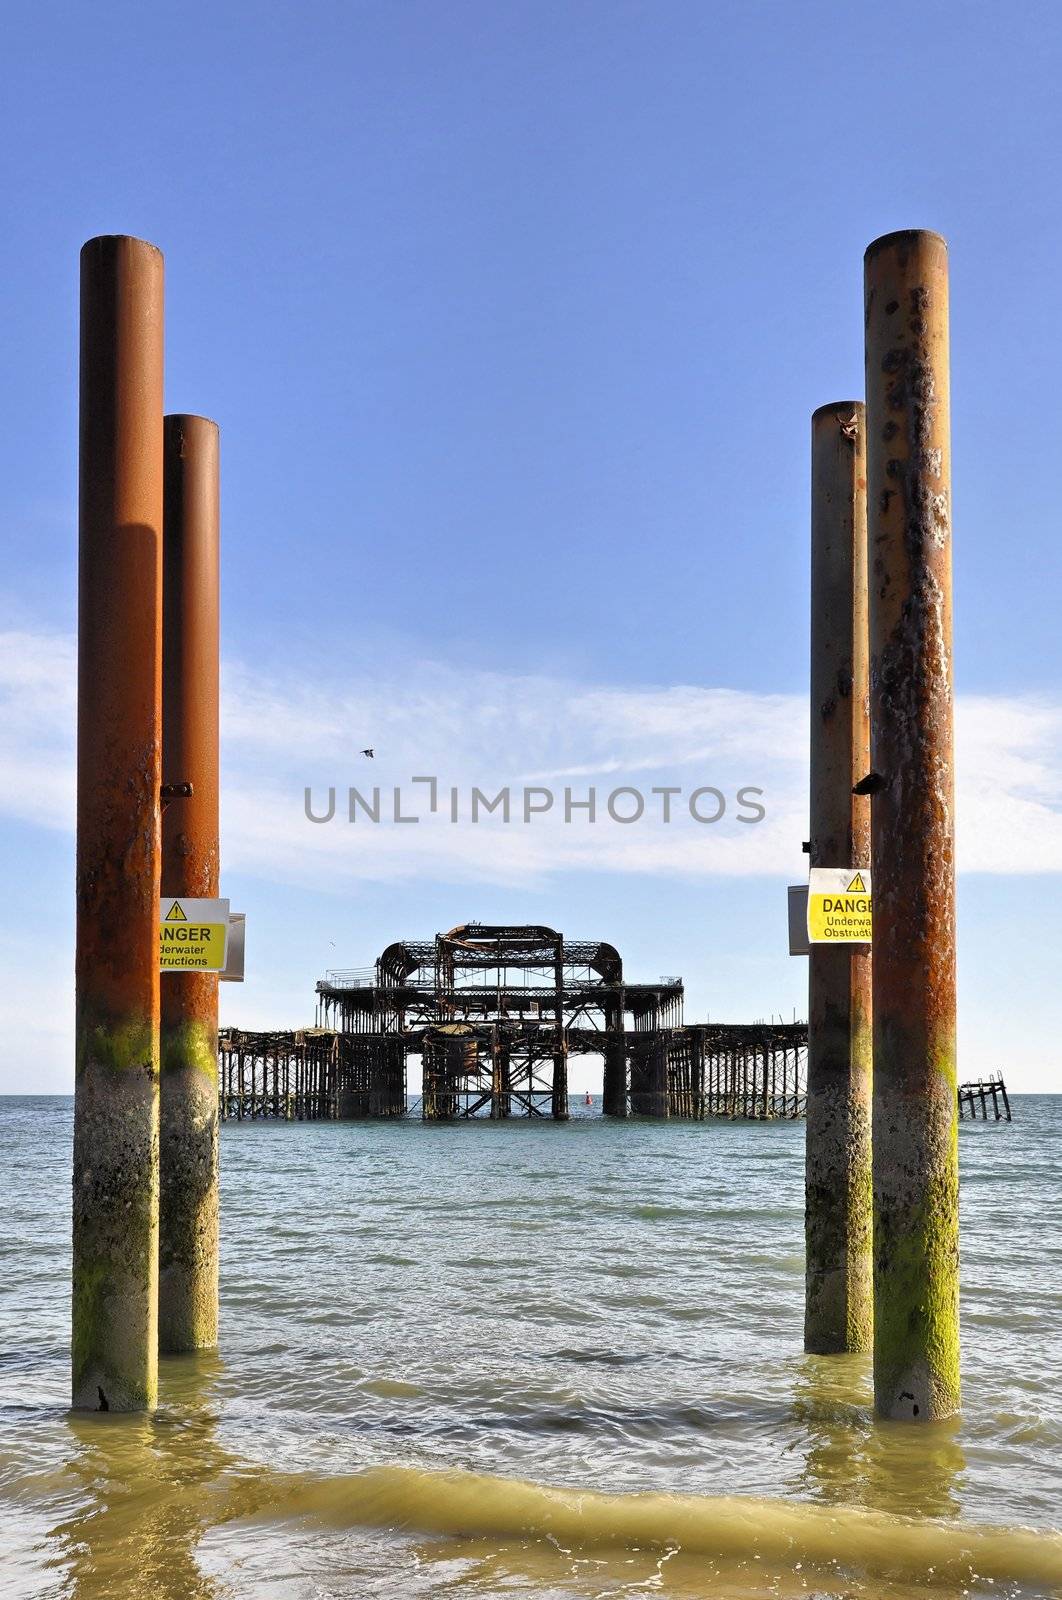 The West Pier in Brighton by dutourdumonde